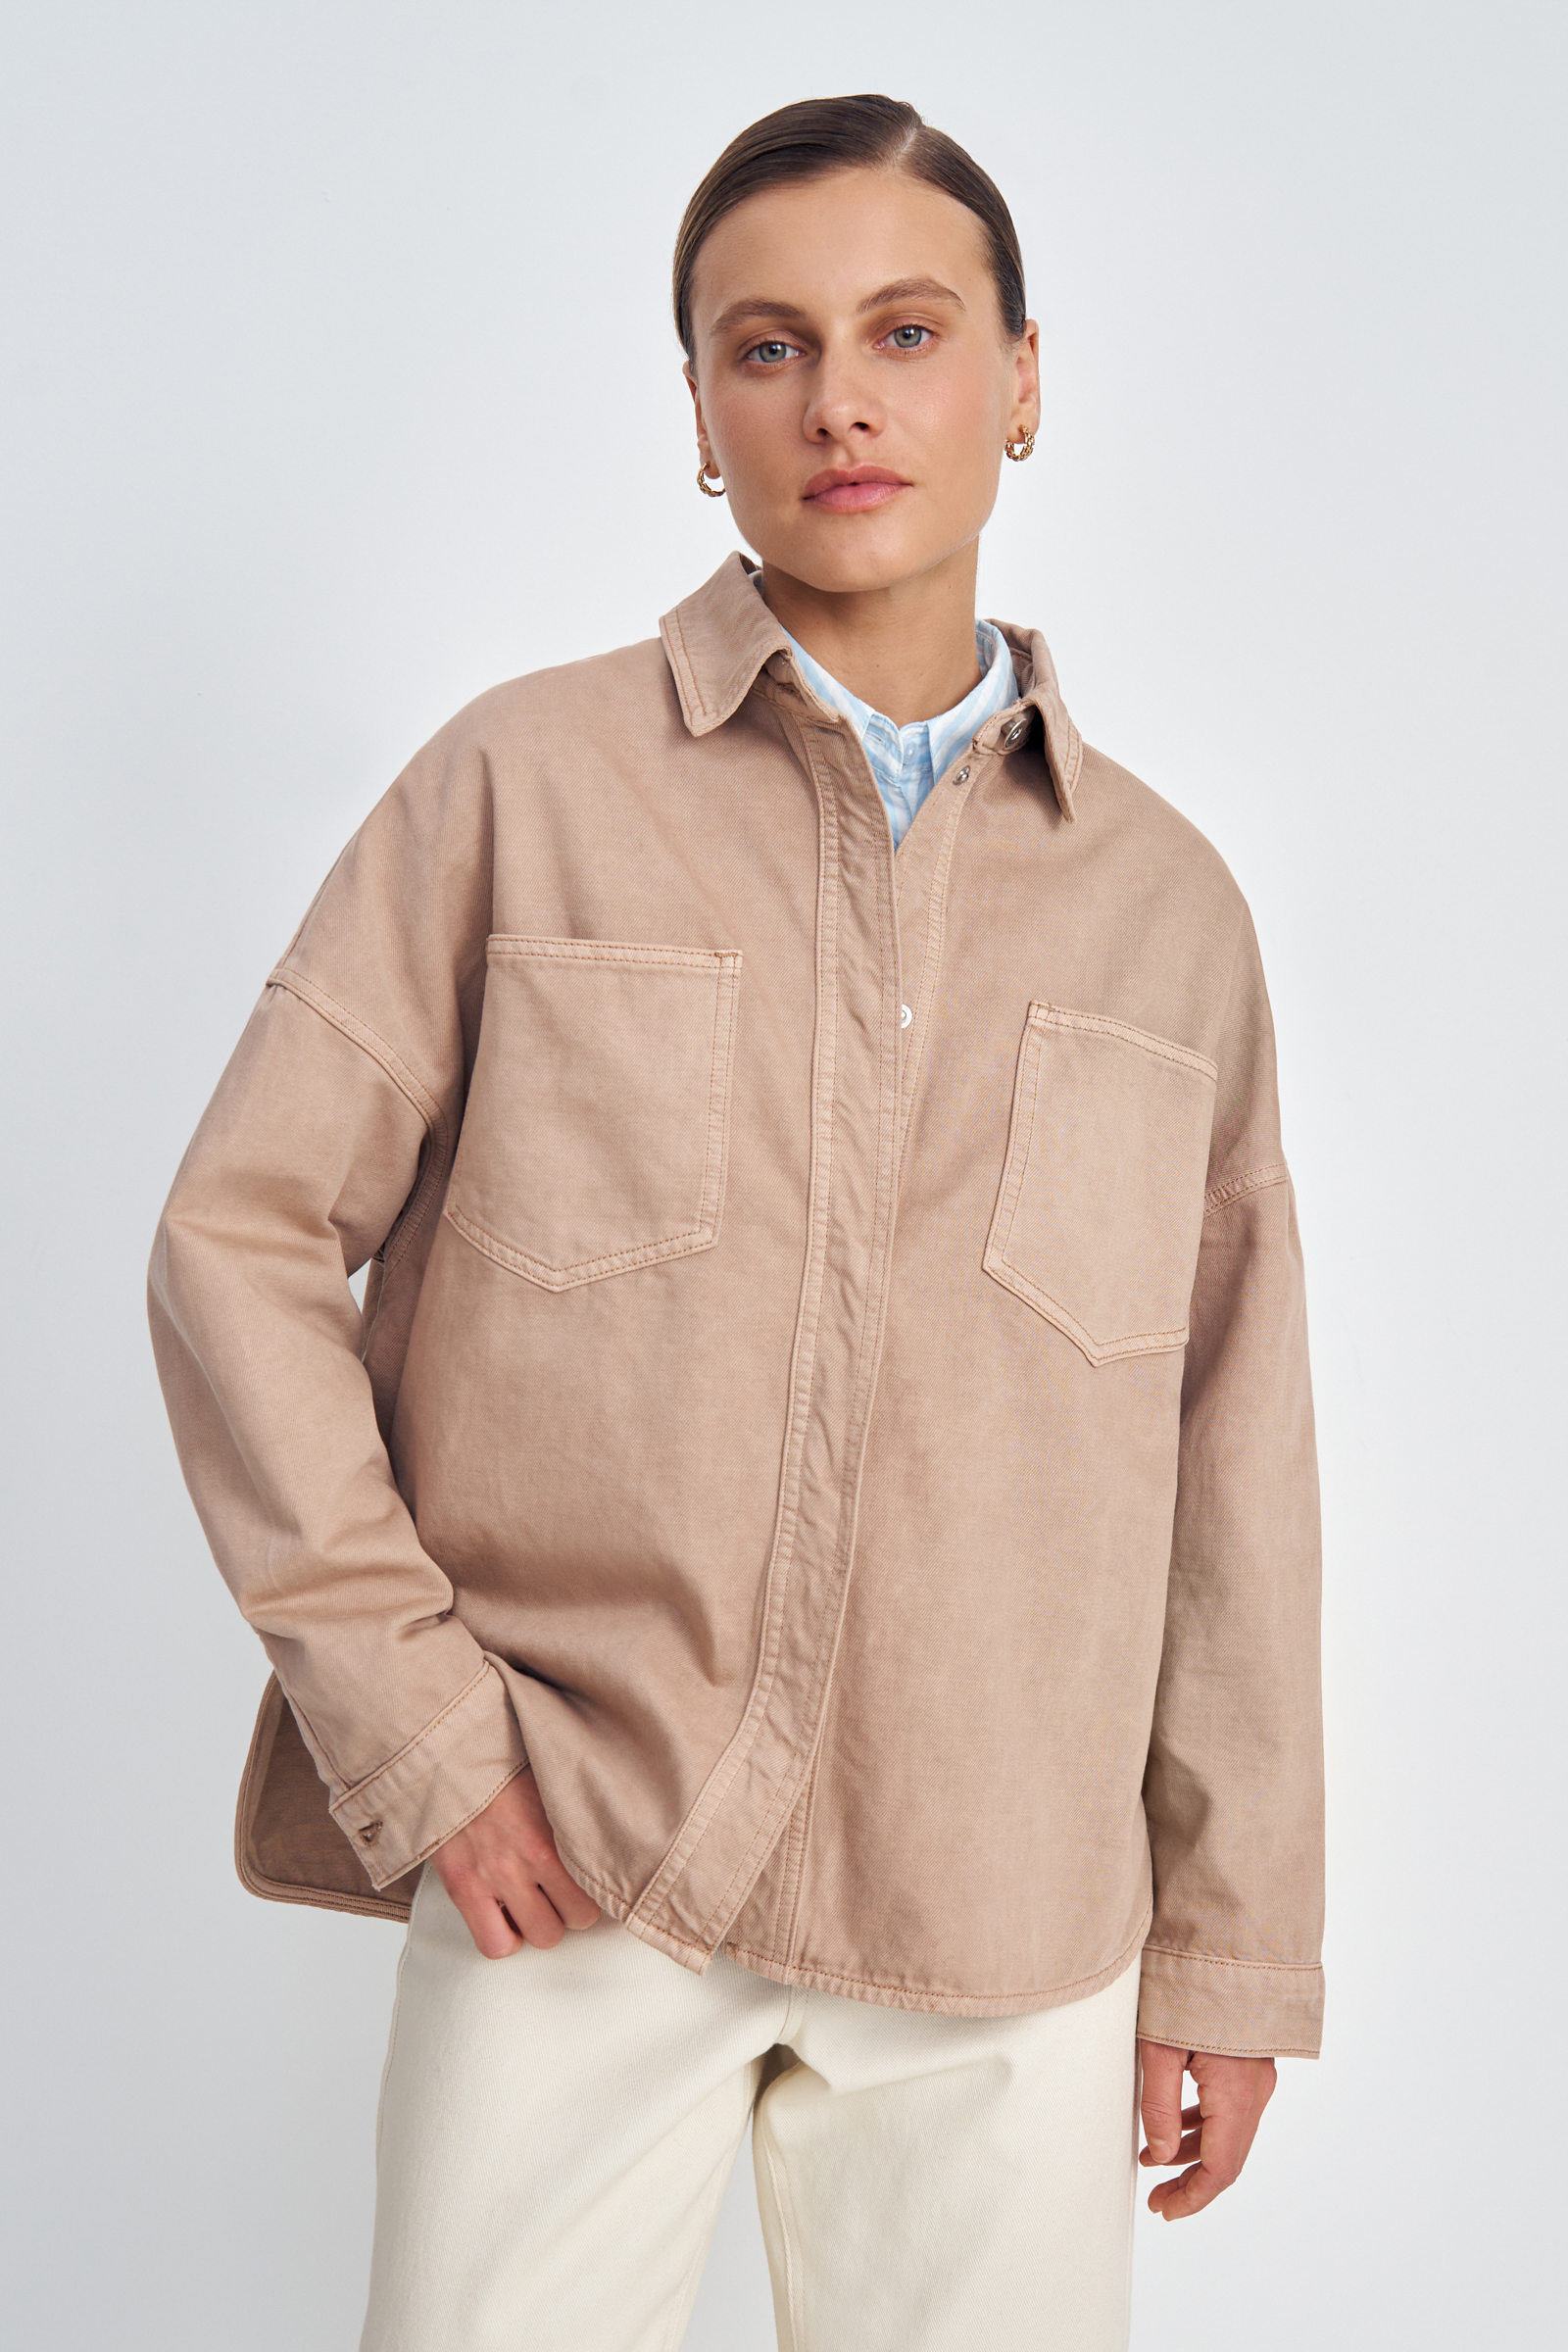 Джинсовая куртка женская Finn Flare FSE15028 коричневая XL